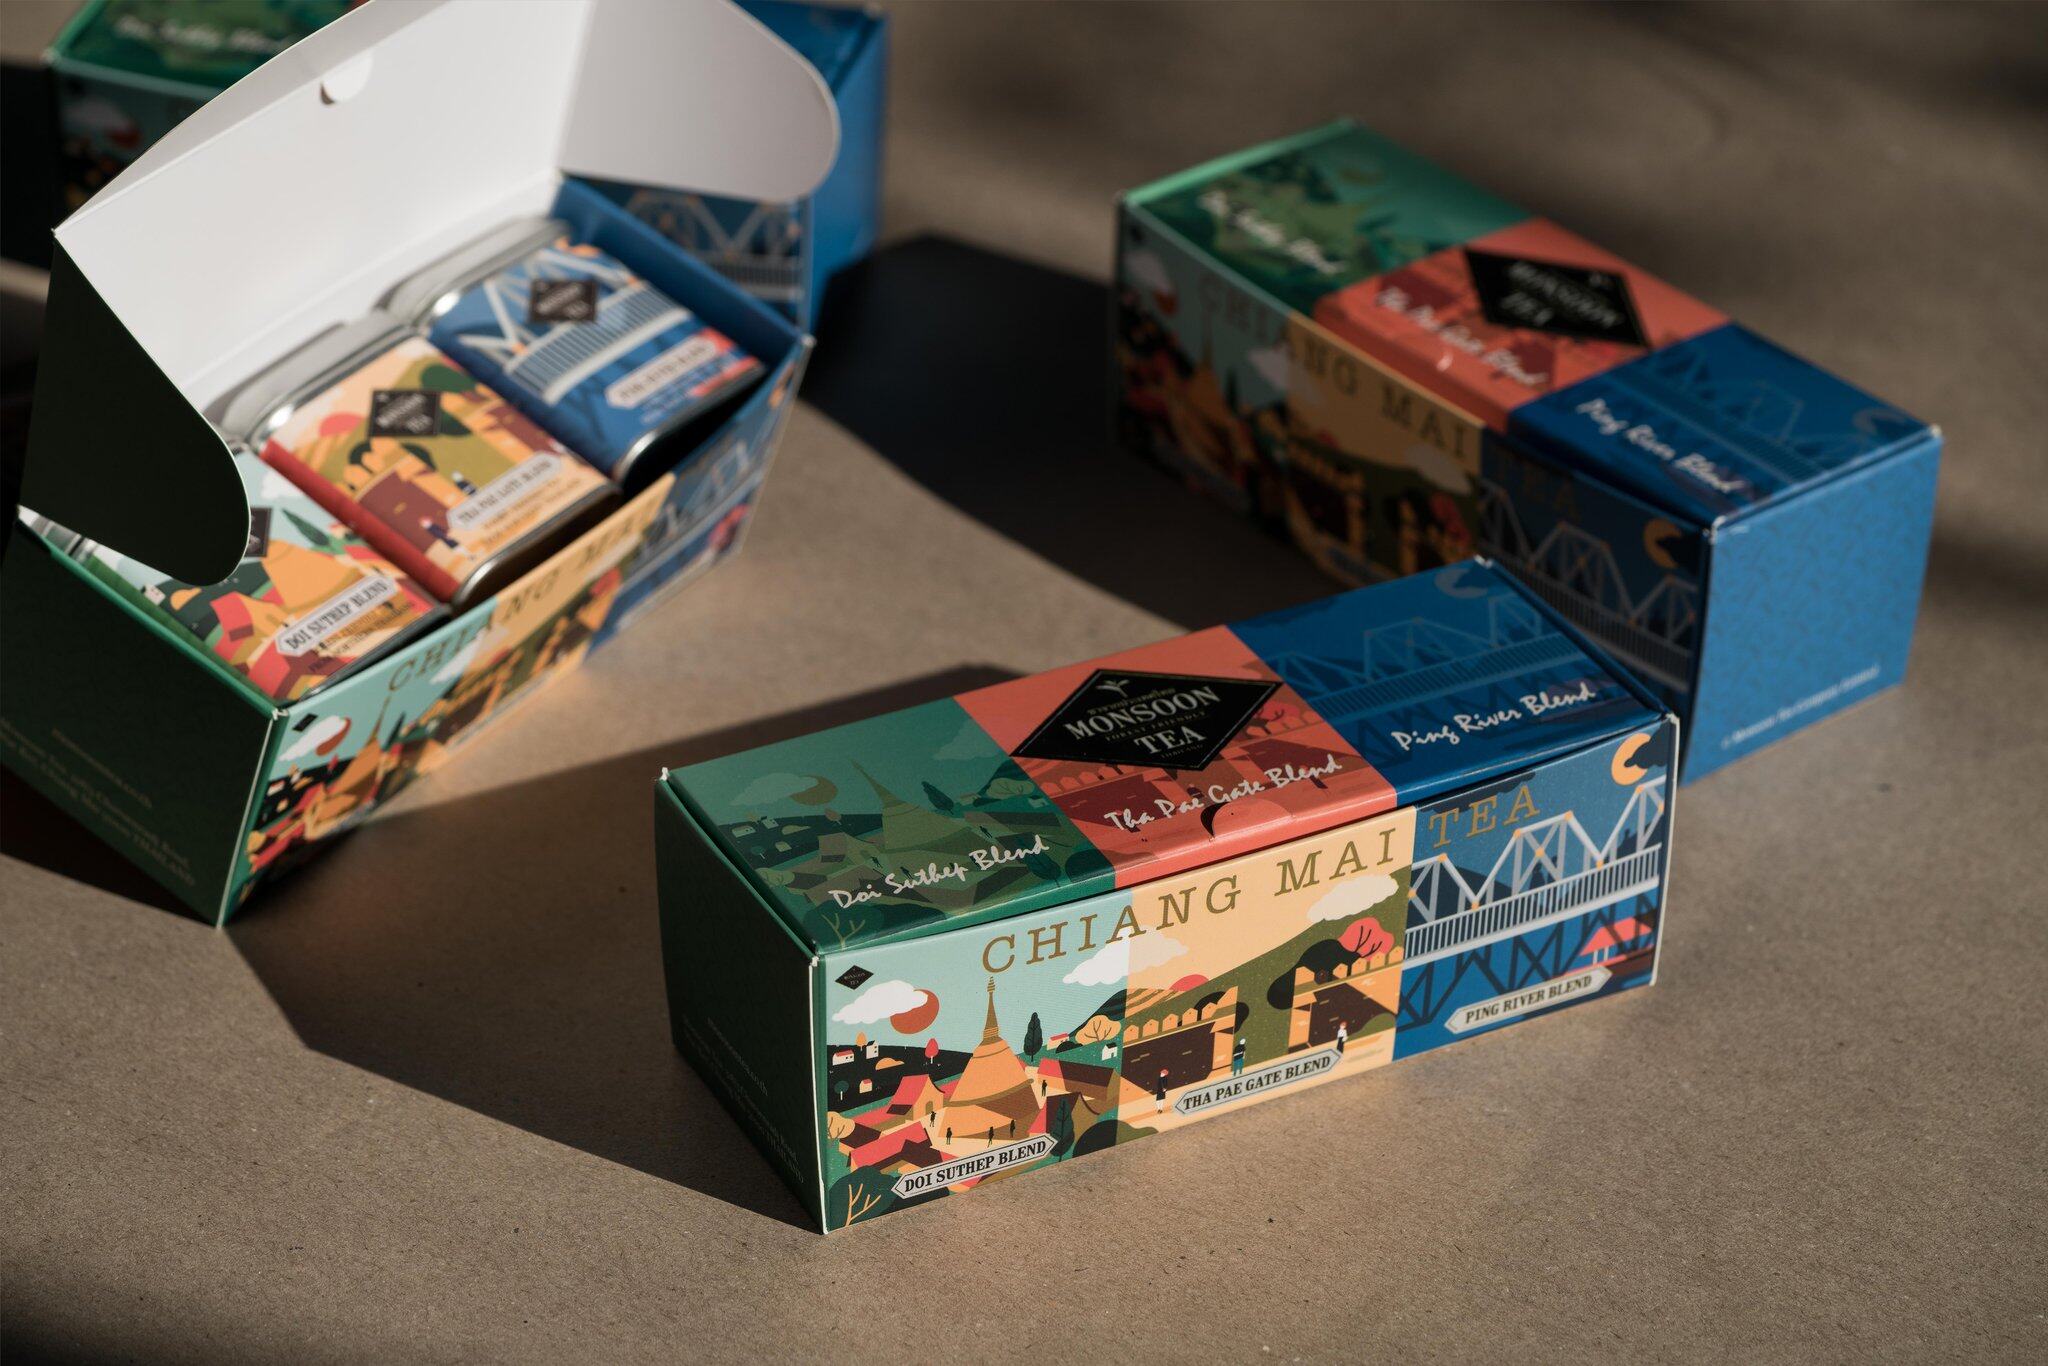 ชา Chiang Mai Blends Tea Box Set Tea from Thailand, Thai Tea ออร์แกนิค Forest tea จากภาคเหนือ ชาป่า ชาไทยสุดพรีเมียม หอมอร่อยของกลิ่นผลไม้